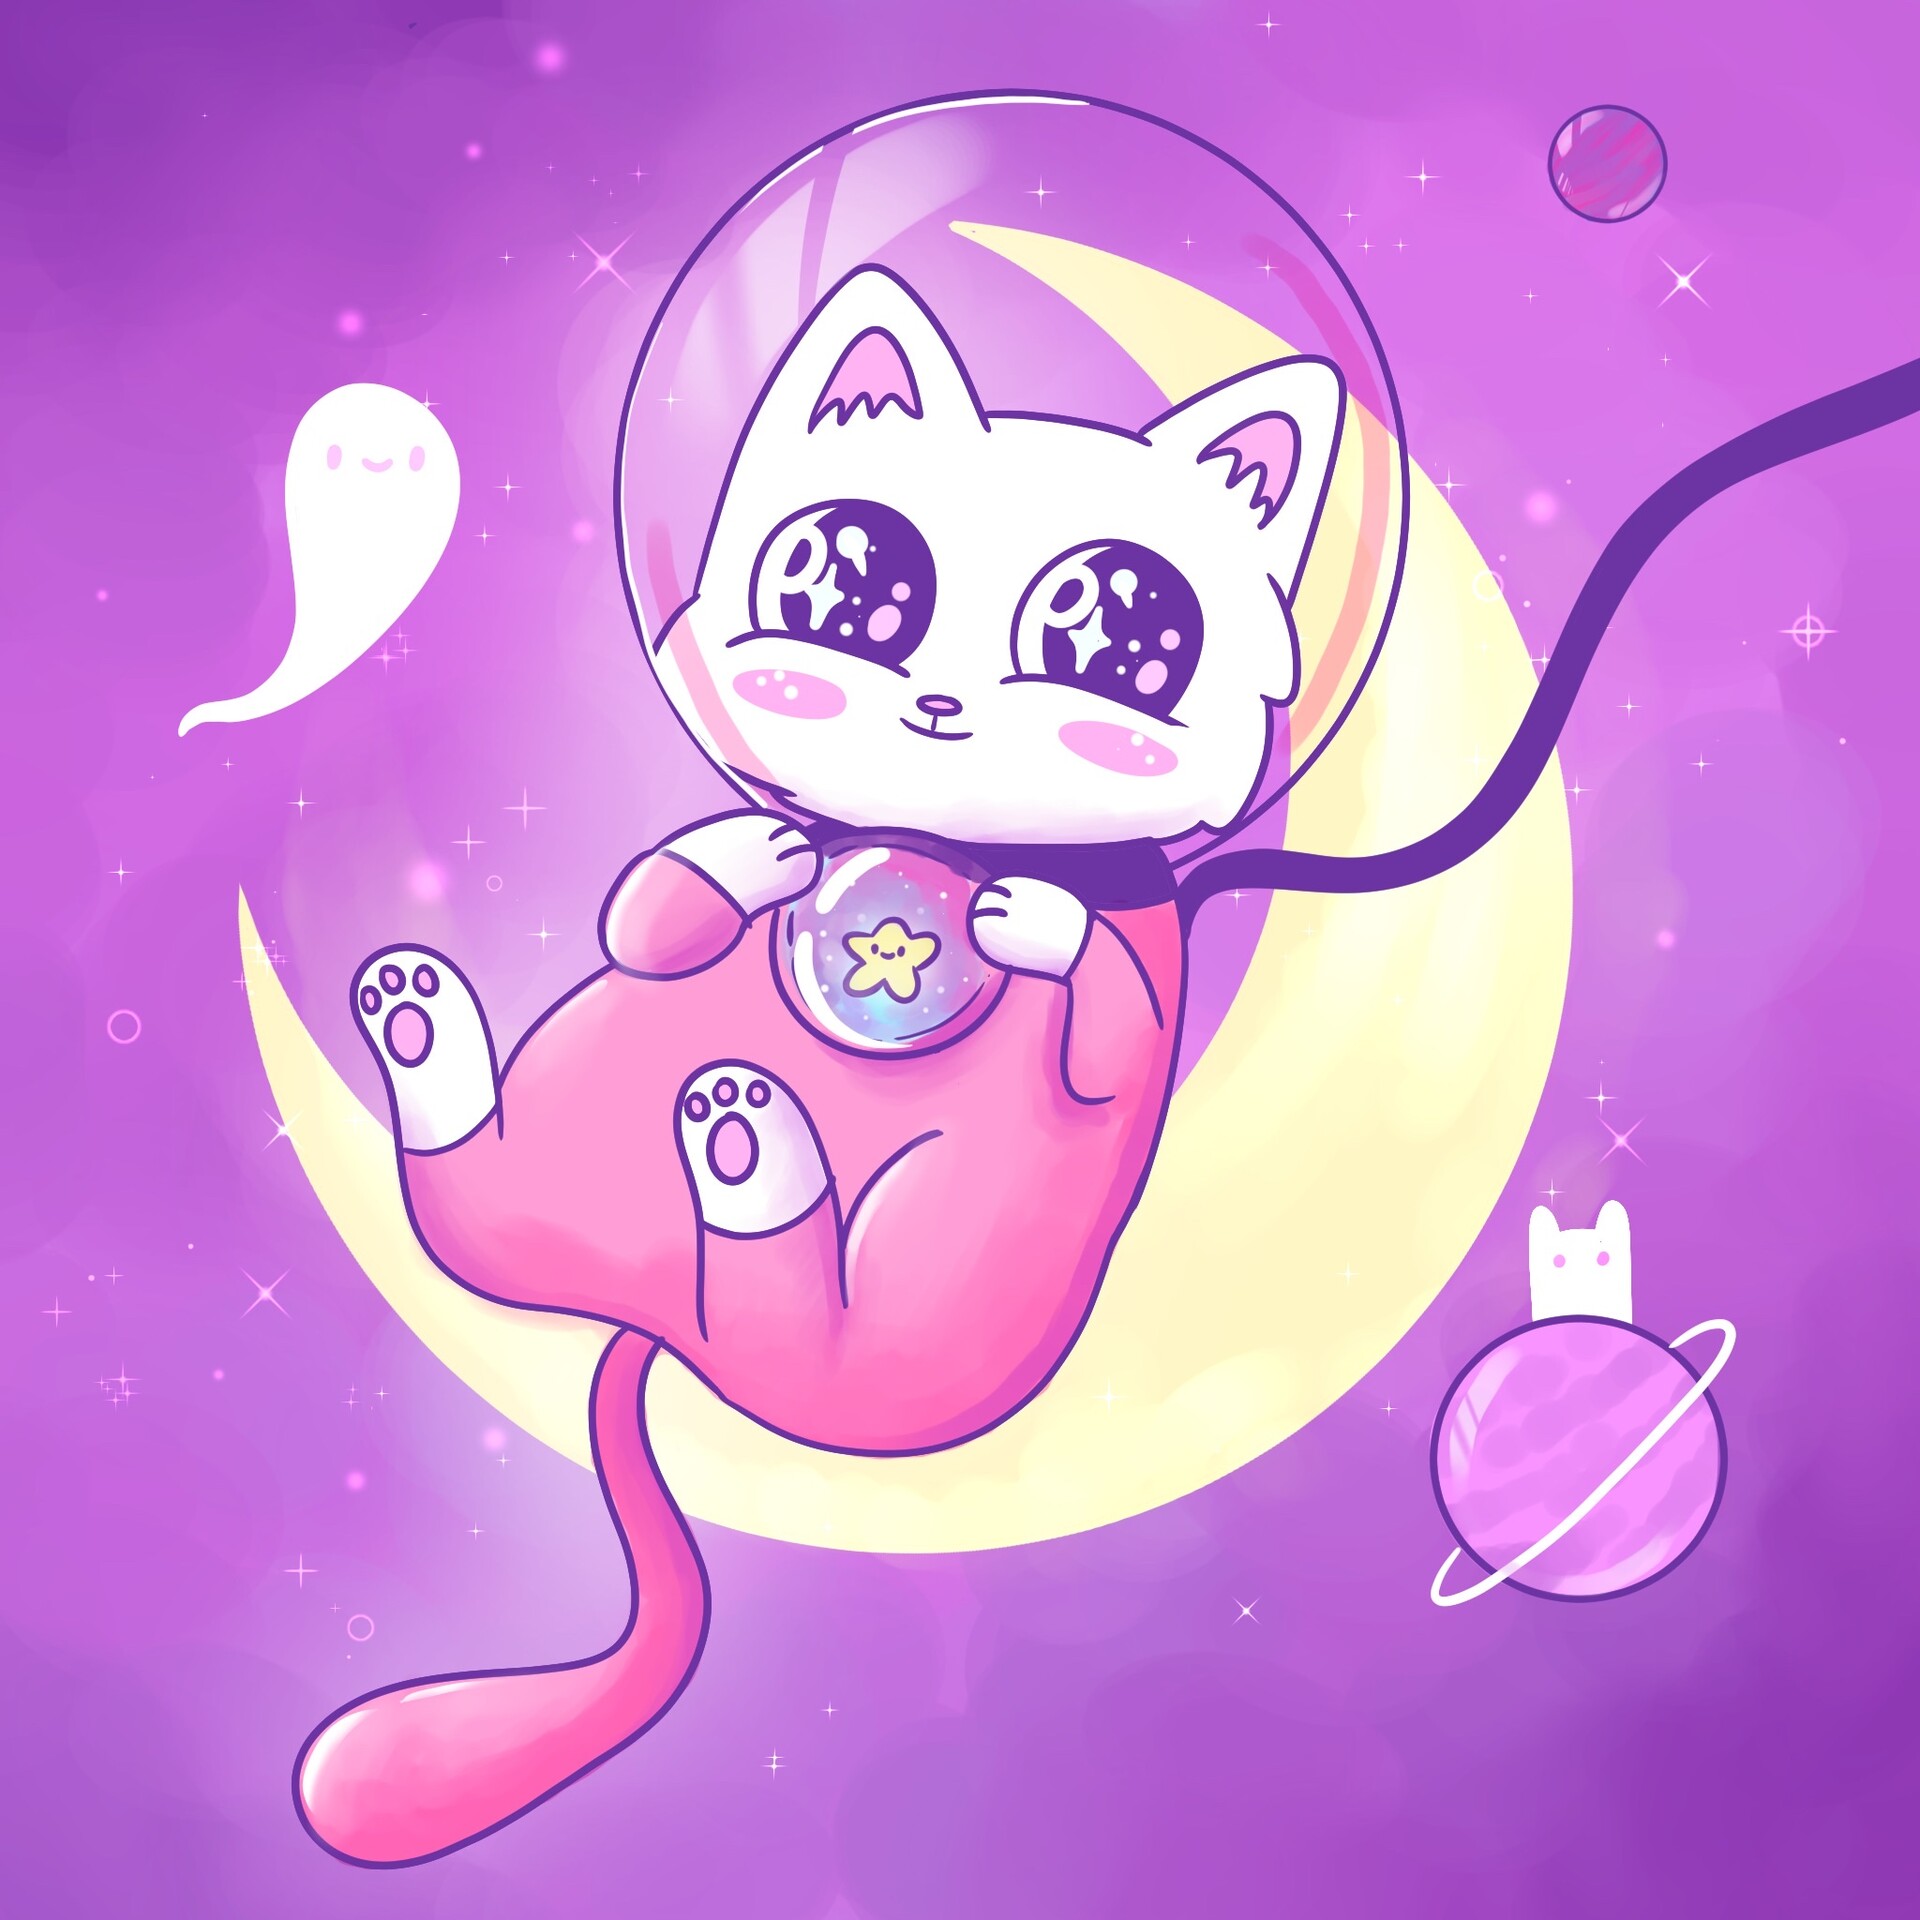 ArtStation - Space kitty